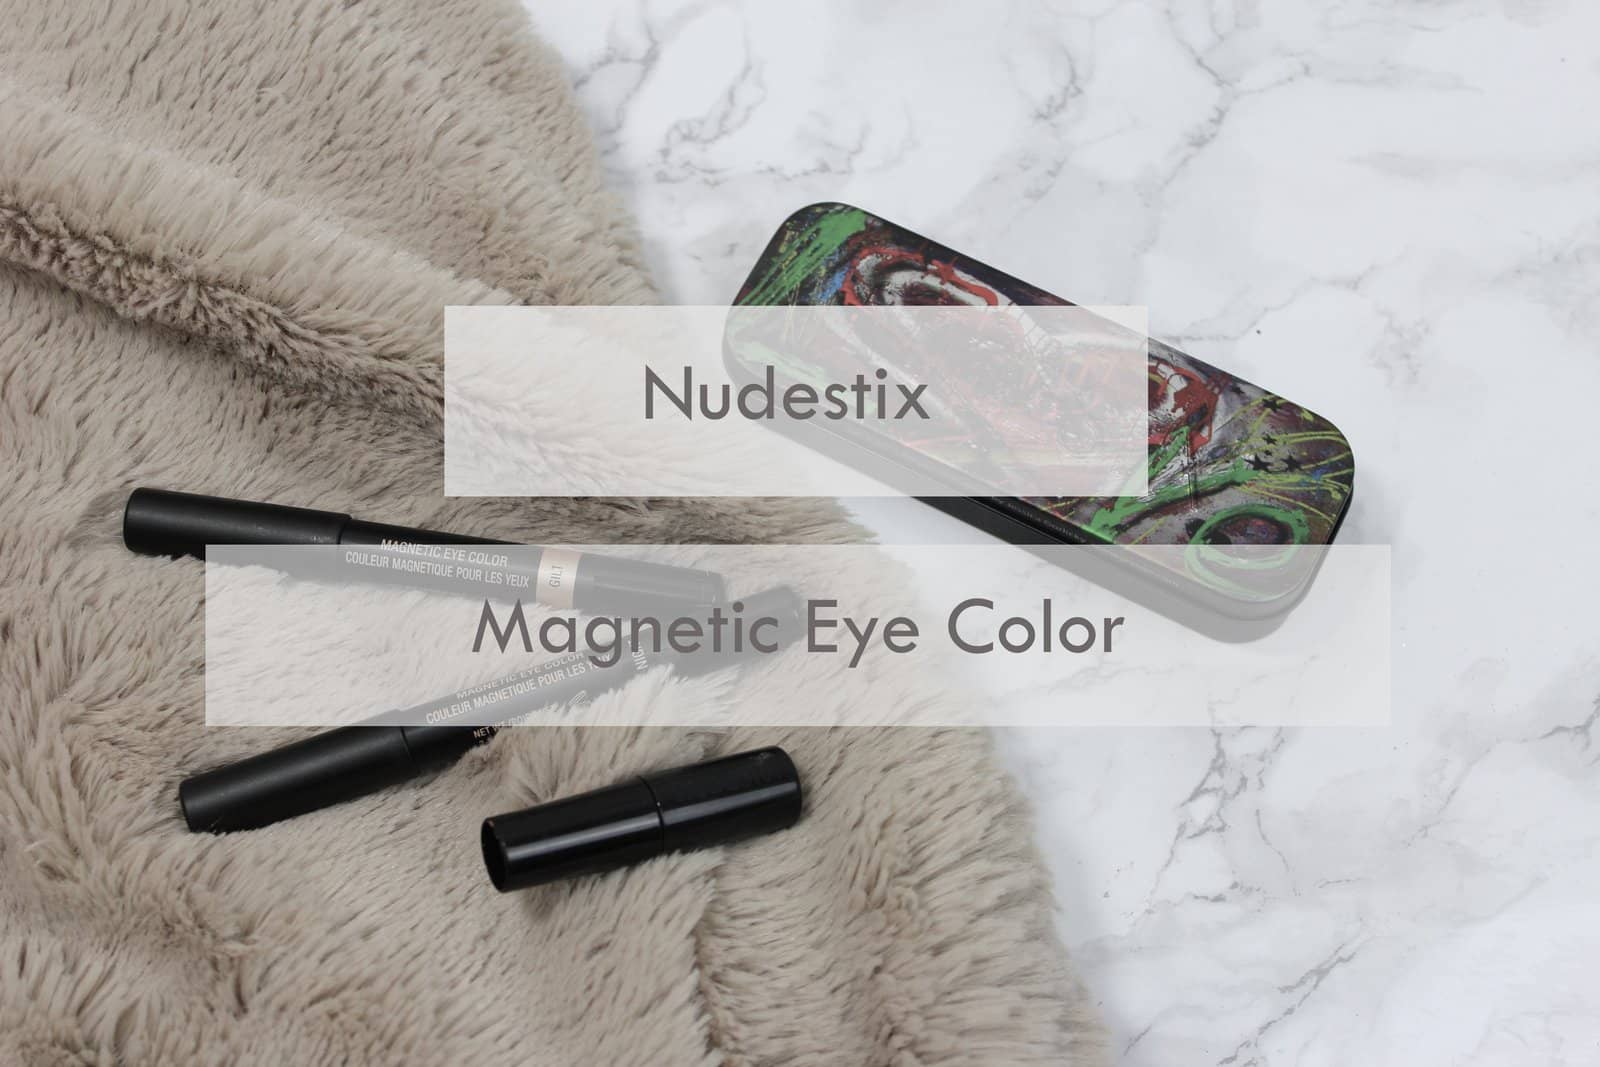 Nudestix Magnetic Eye Color